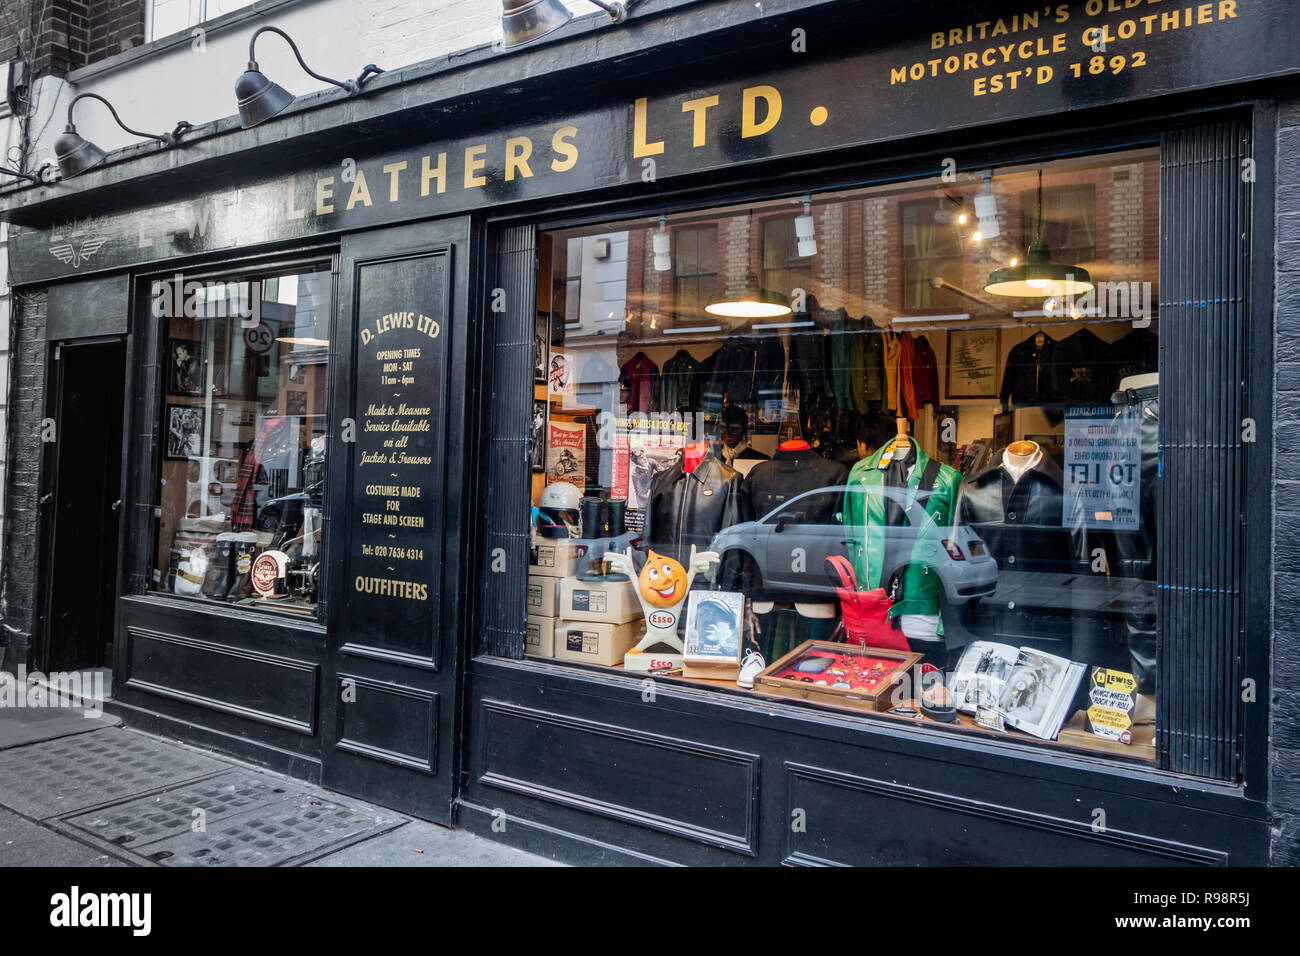 L'usure du cuir Lewis établis en fonction de leur exposition, d'un rue Whitfield fenêtre double front shop à Londres, Angleterre Banque D'Images